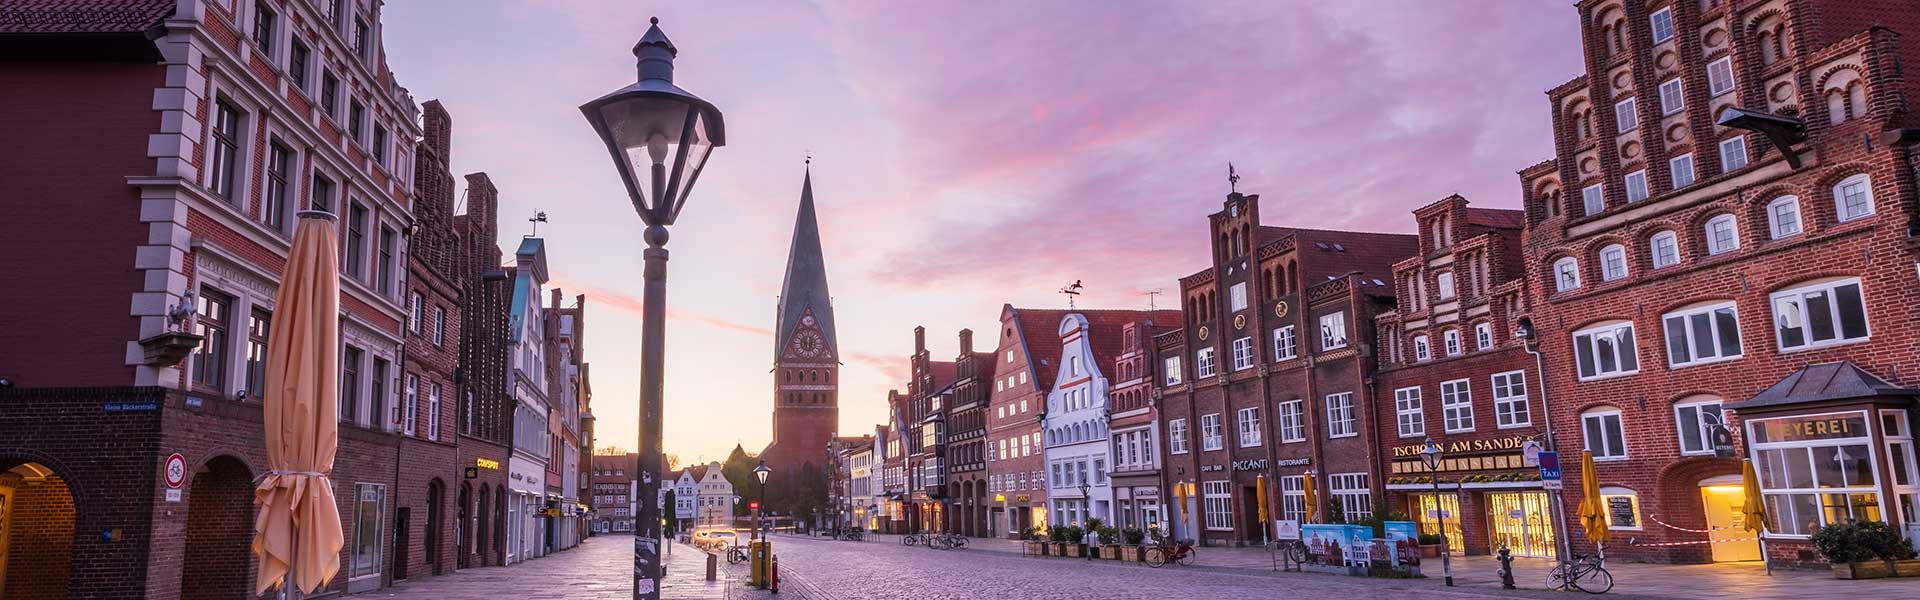 Hanse Stadt Lüneburg